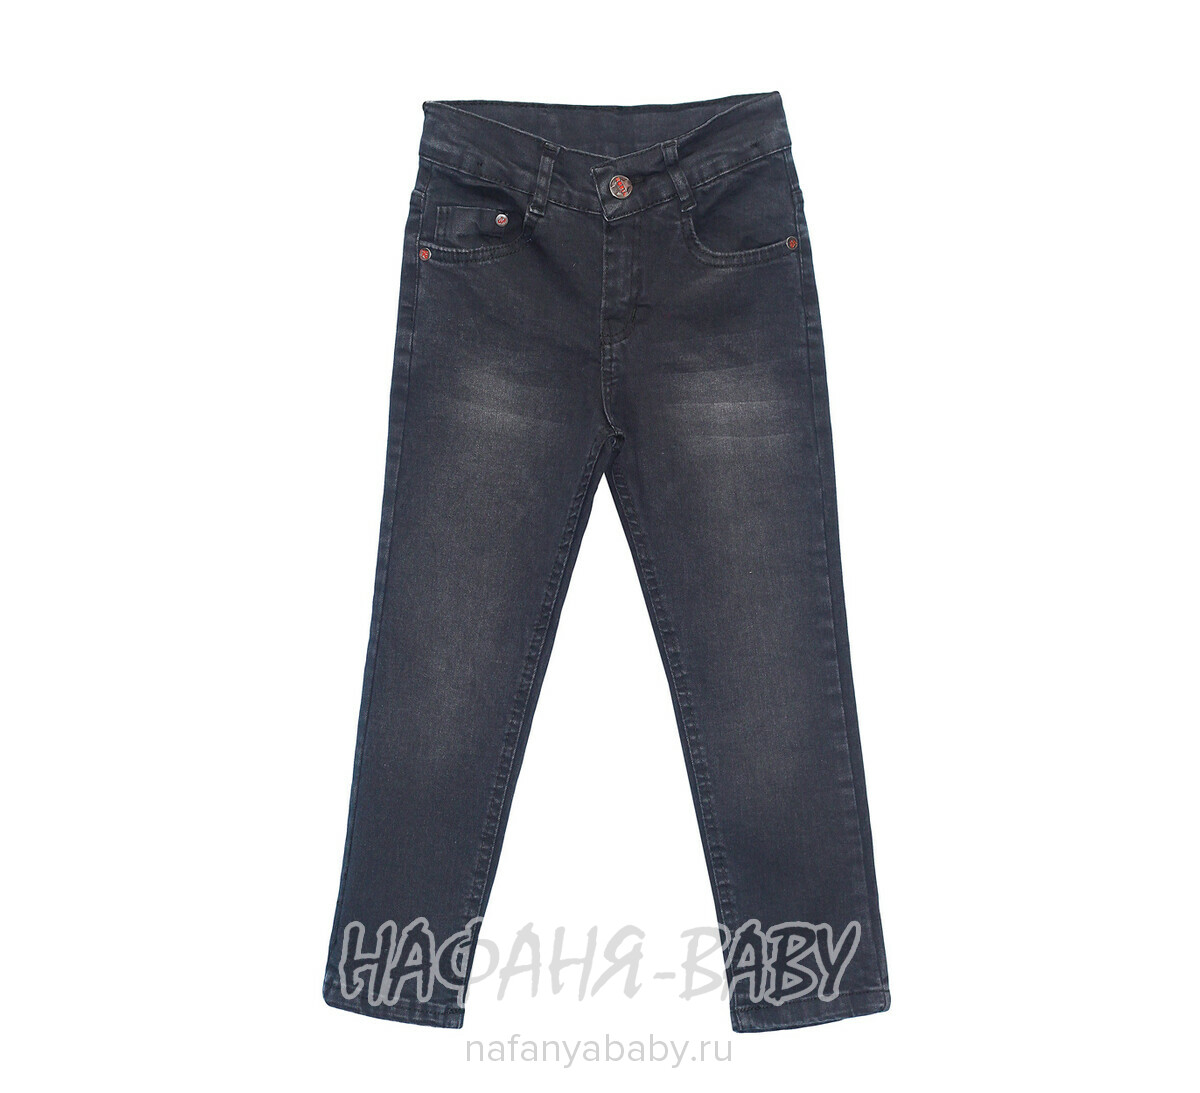 Детские джинсы ROBIN арт: 5205-2, 5-9 лет, цвет черный, оптом Турция